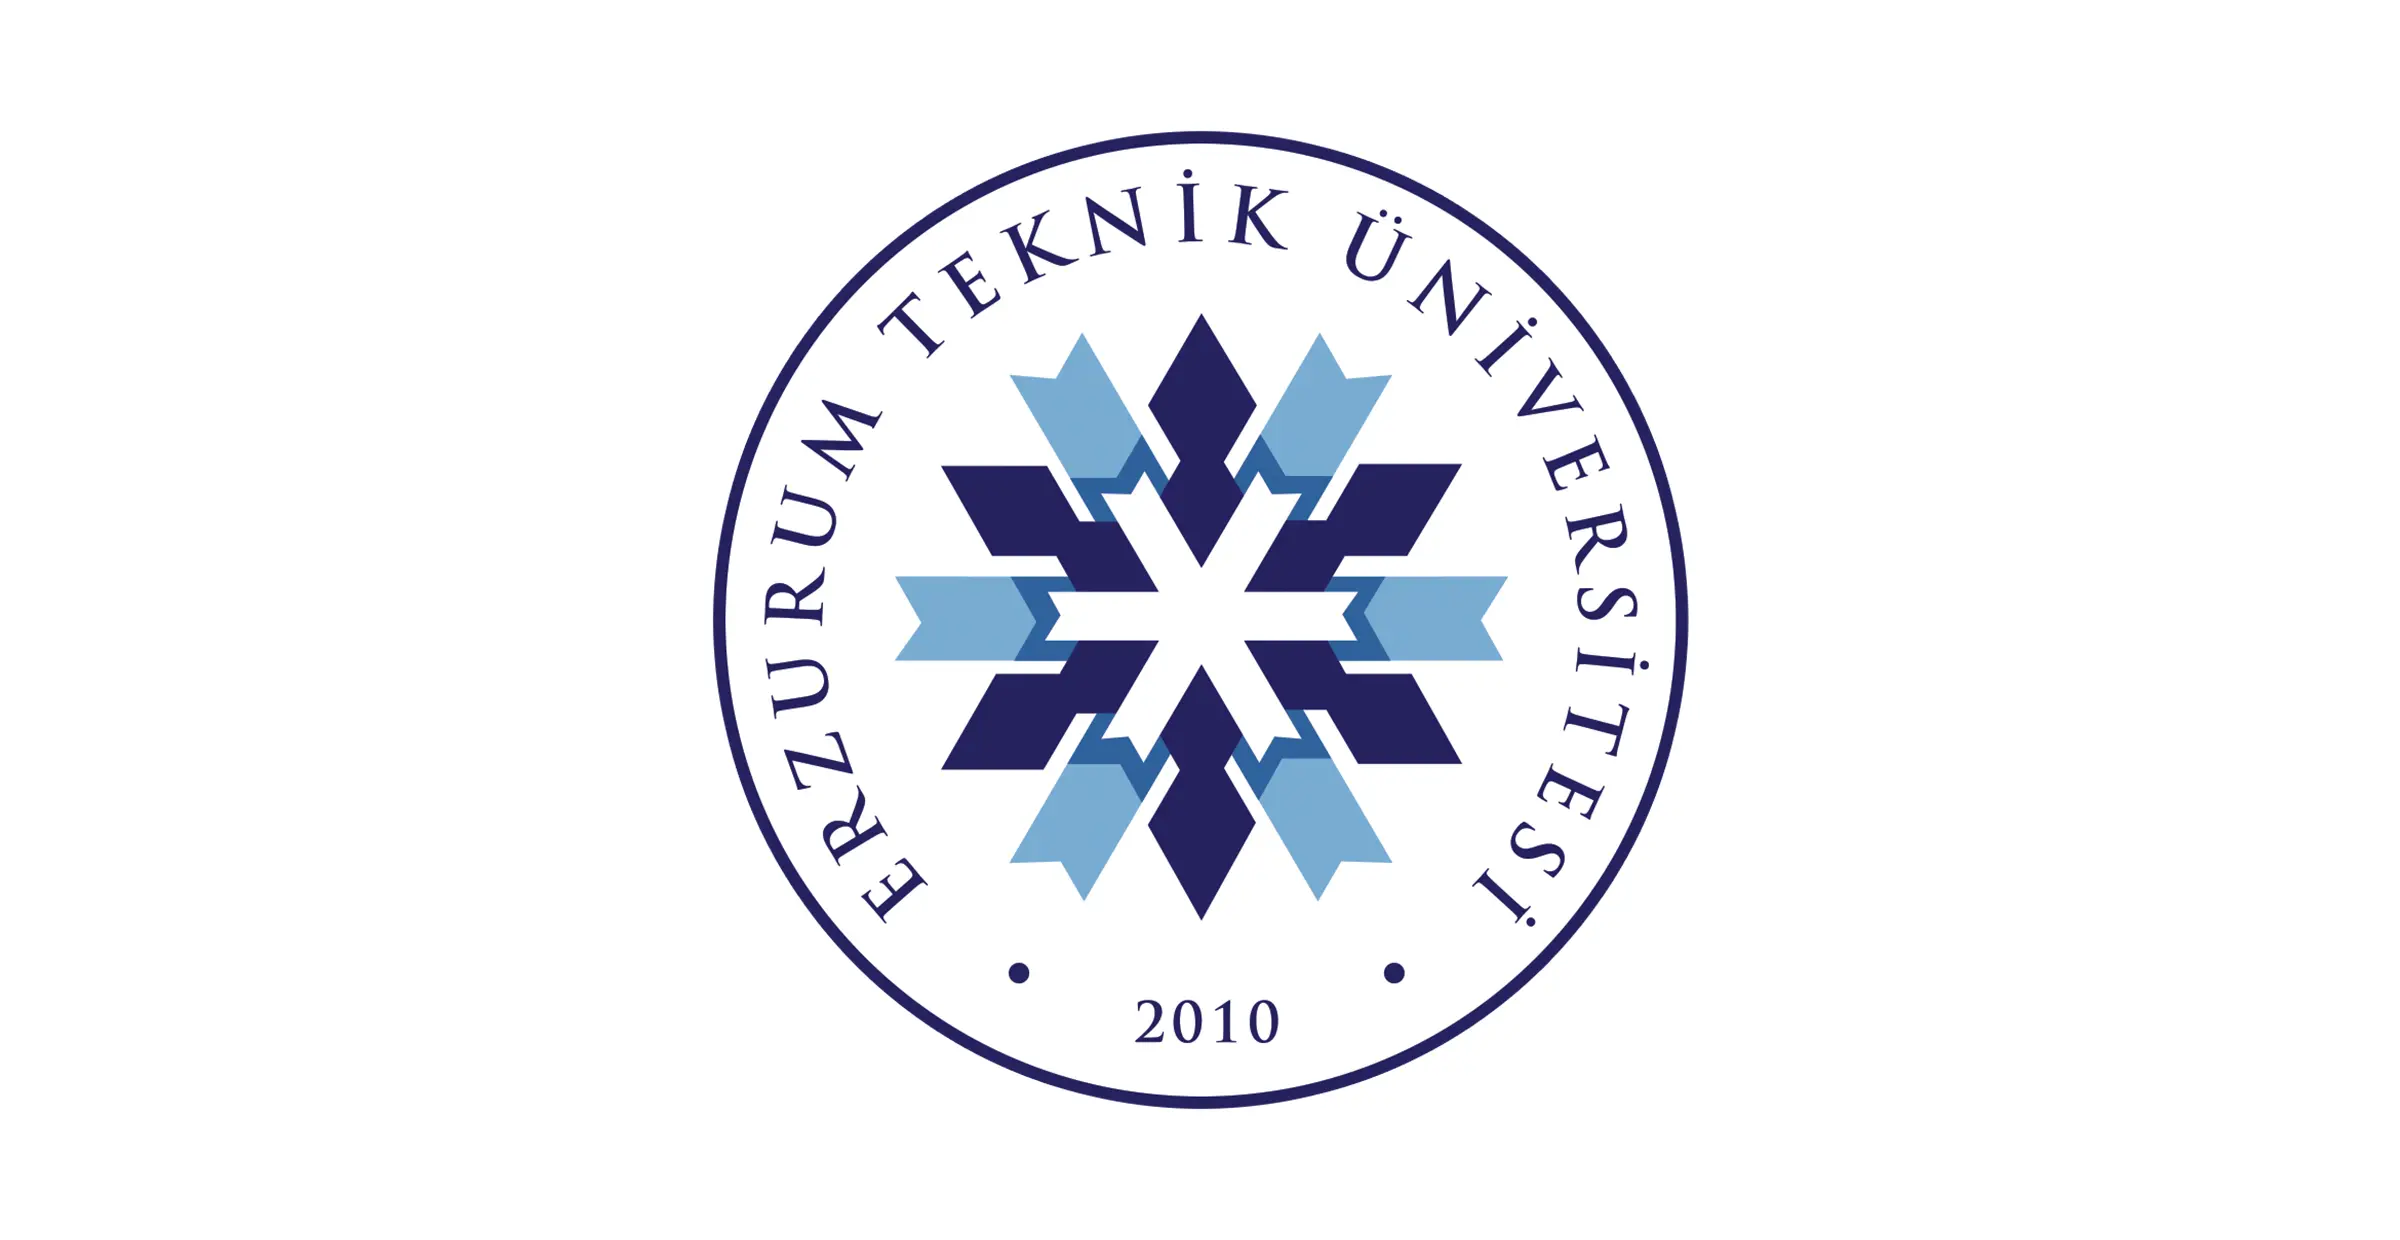 افتتحت جامعة ارزروم التقنية Erzurum Teknik Üniversitesi، الواقعة على حدود منطقة ياقوتي في ارزروم ، في عام 2010 وبدأت مسيرتها التعليمية 2012